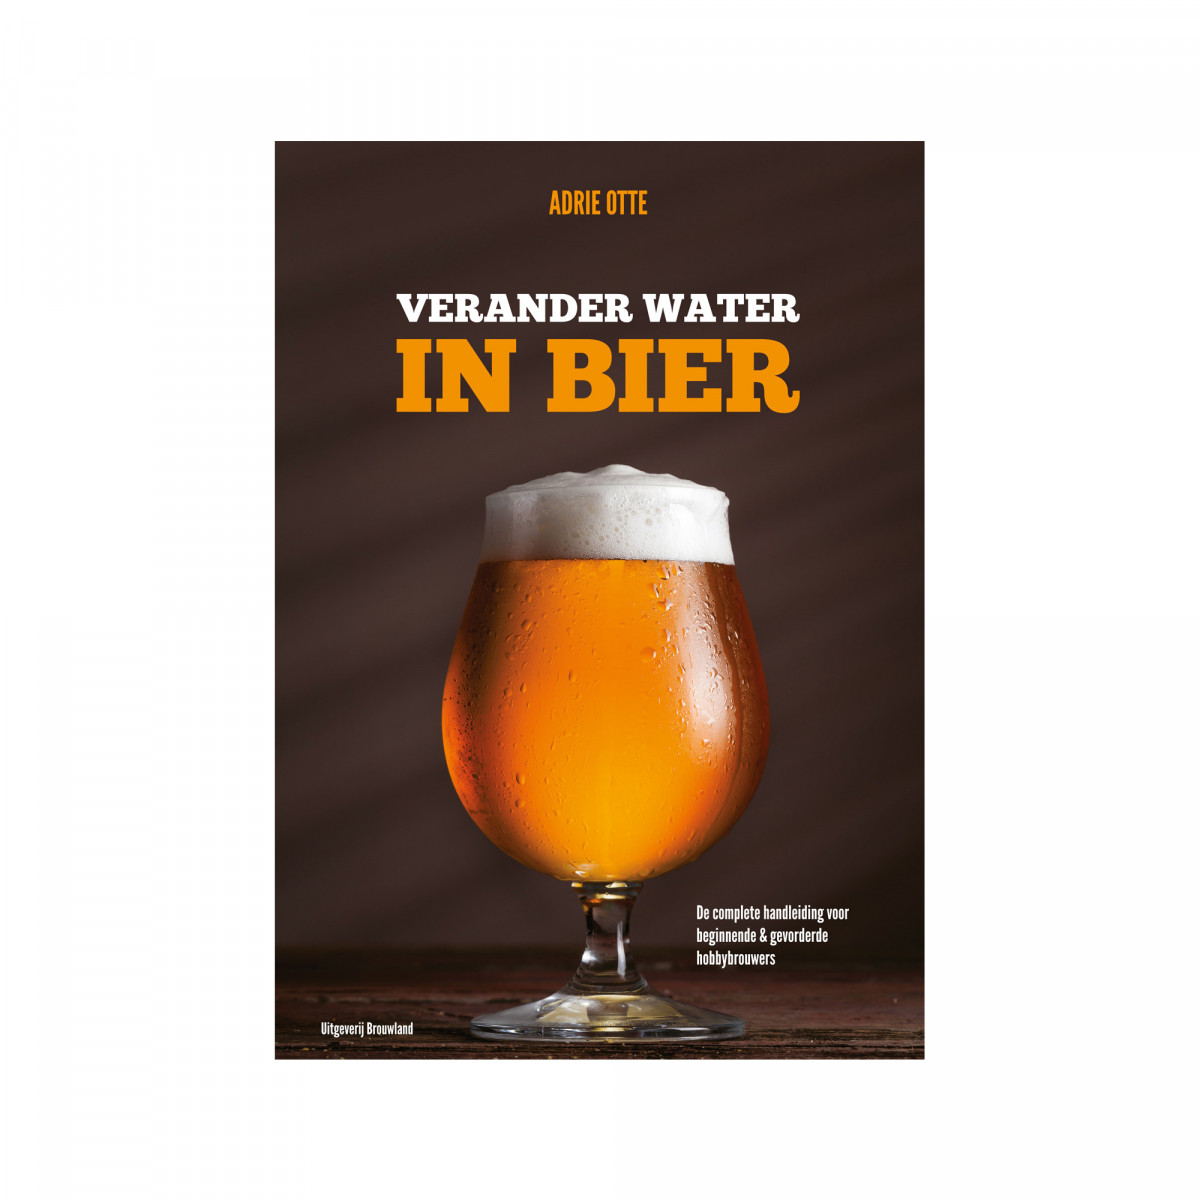 Verander water in bier' - A. Otte - 2. Auflage